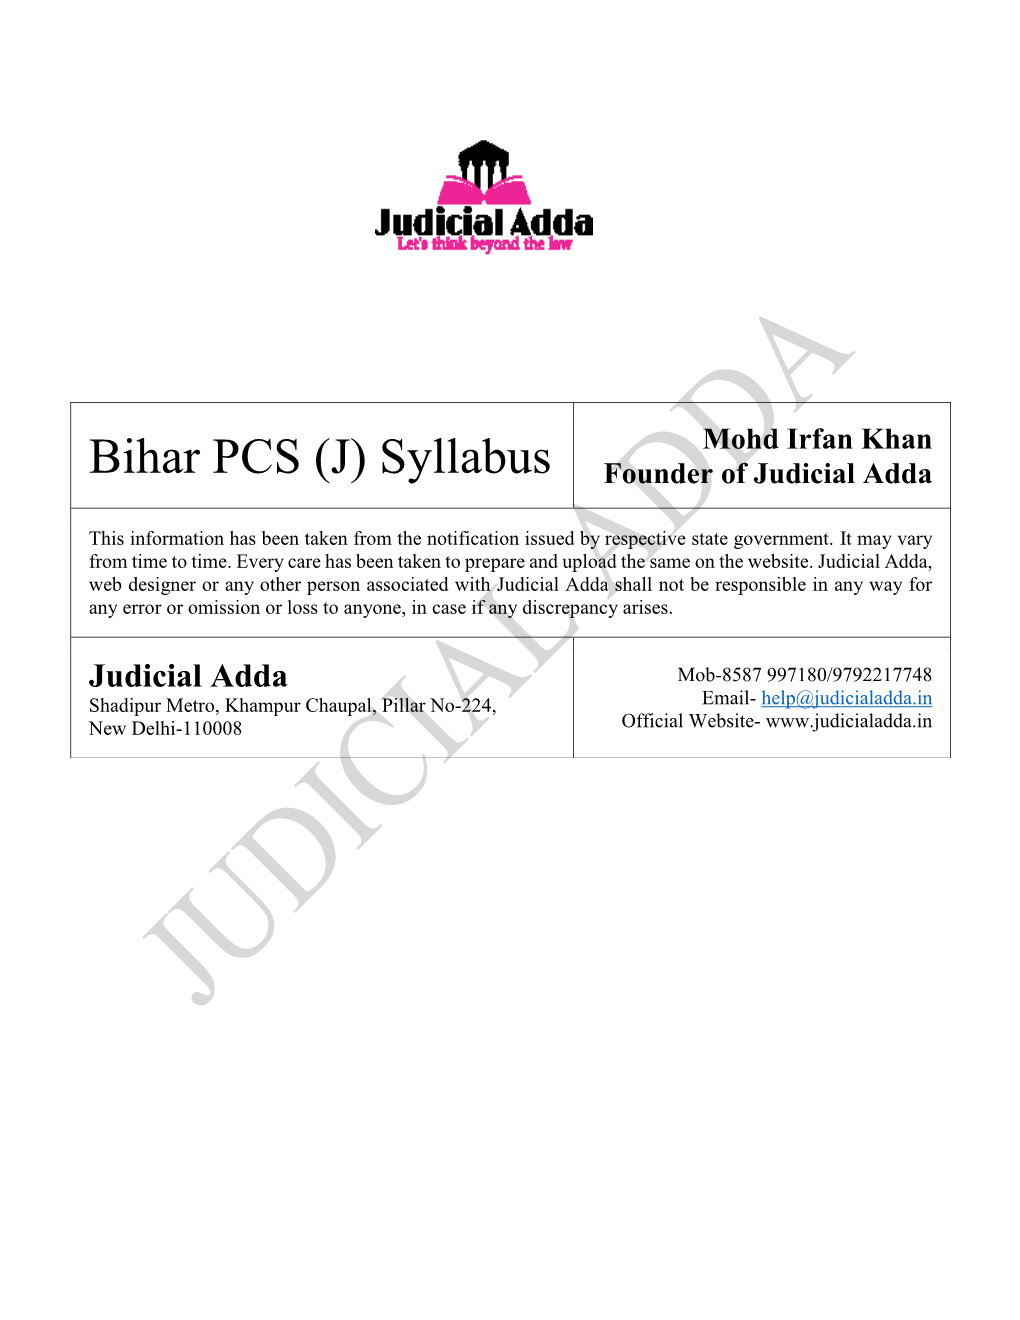 Bihar PCS (J) Syllabus Founder of Judicial Adda